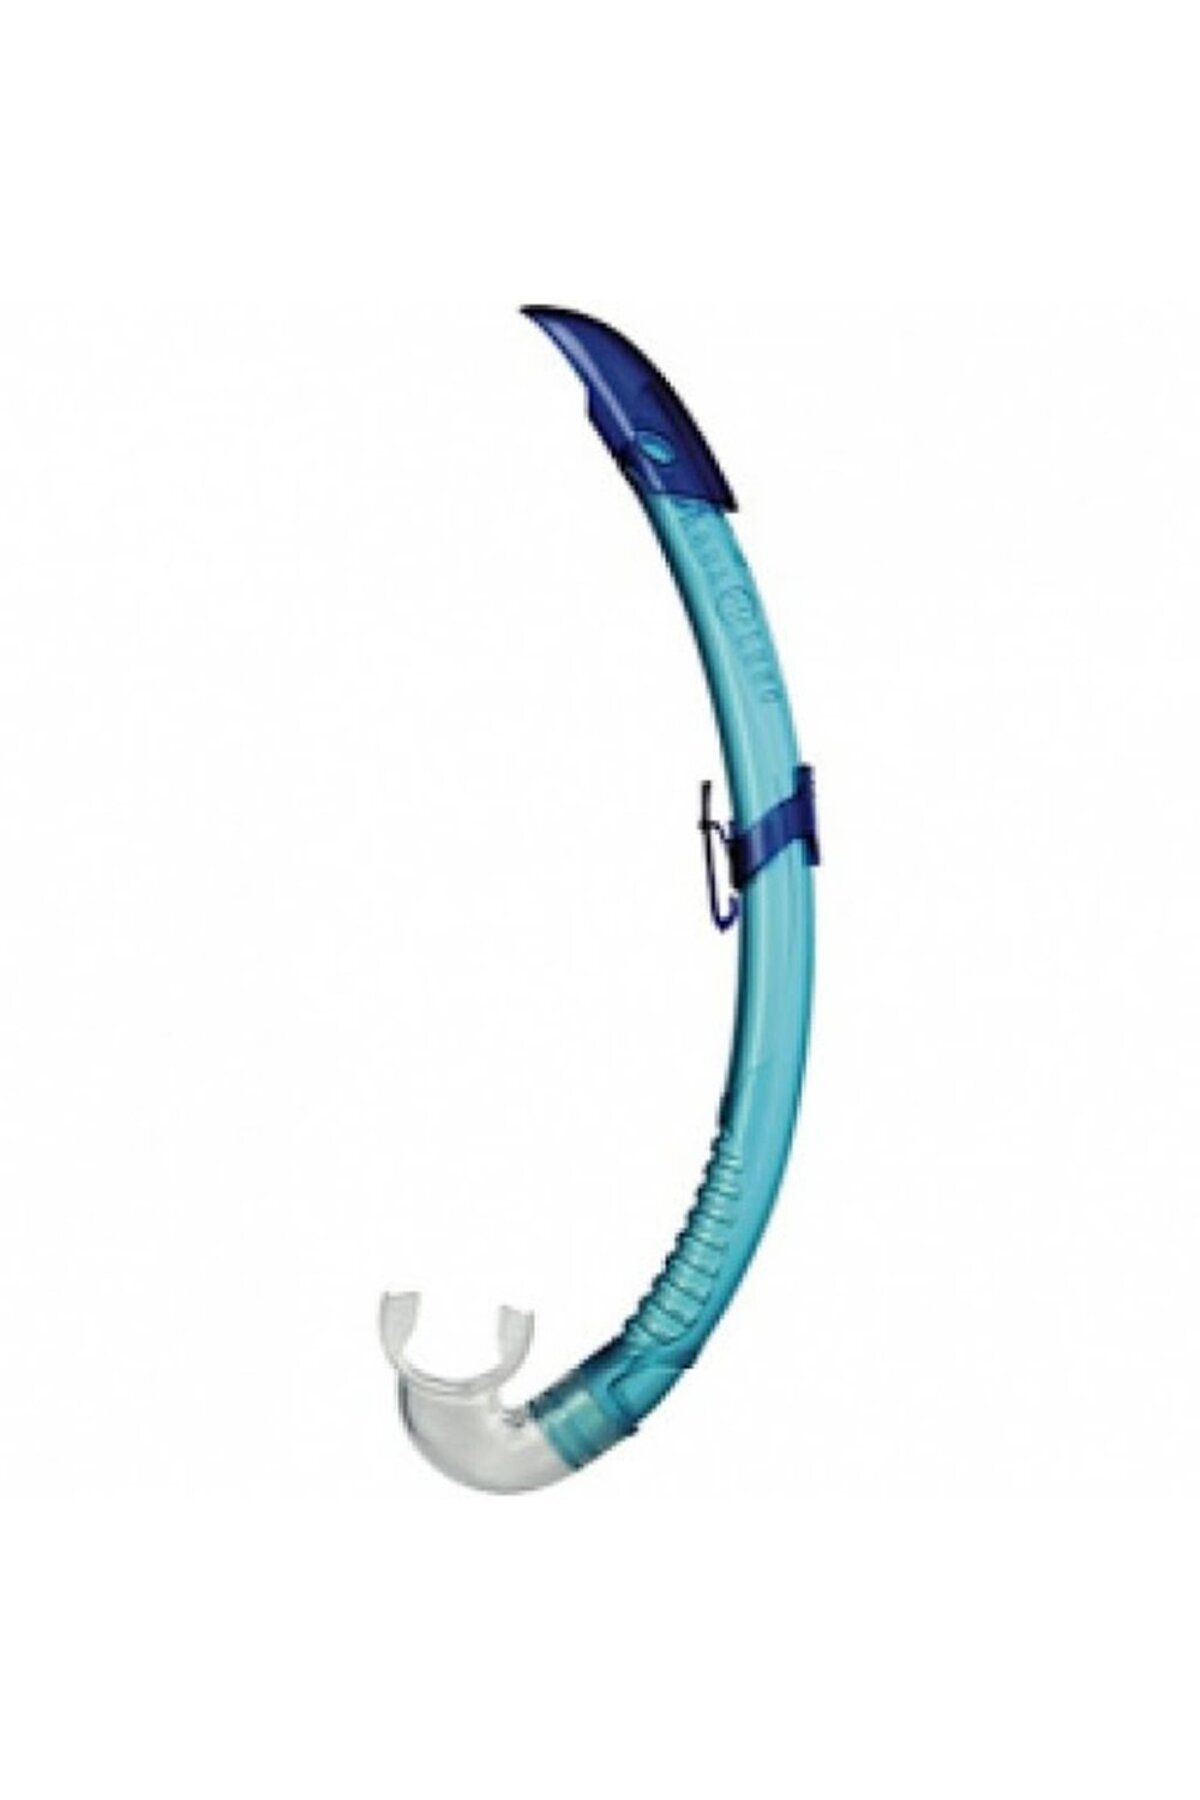 Aqua Lung Snorkel Airflex Lx - Aqua